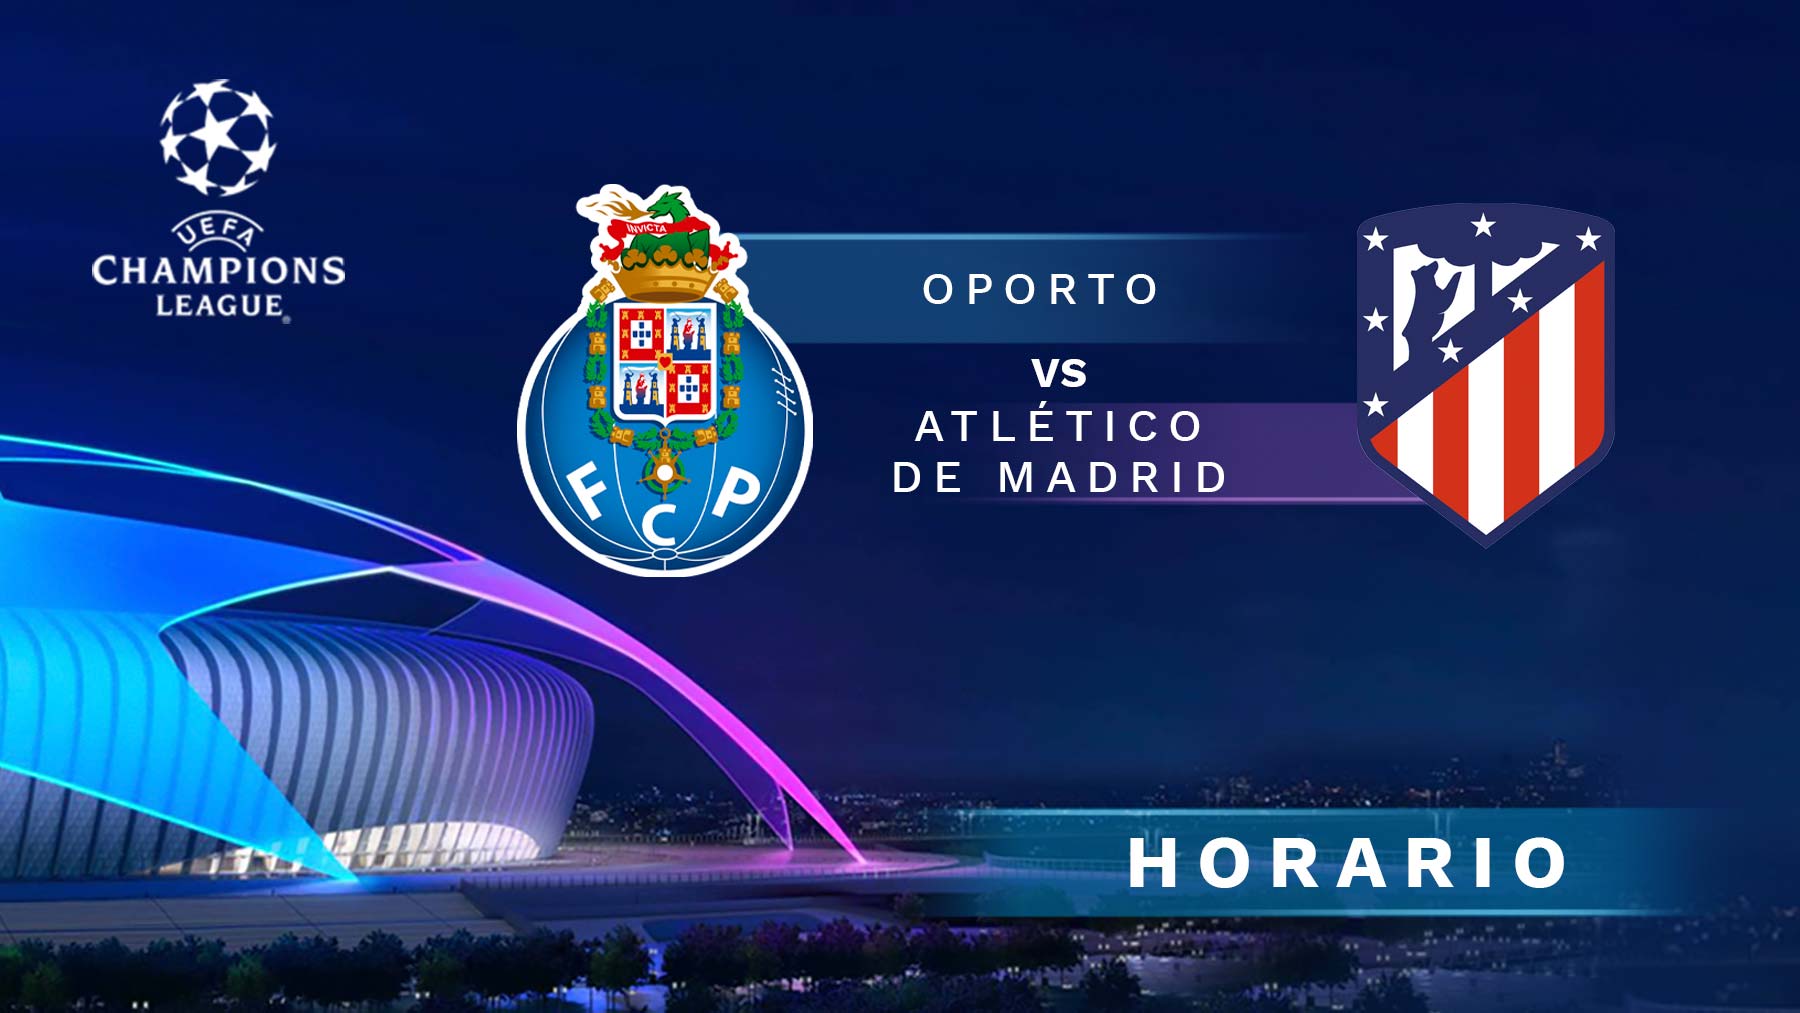 Oporto – Atlético de Madrid: a qué hora es el partido de Champions League y cómo verlo en directo online y por TV.